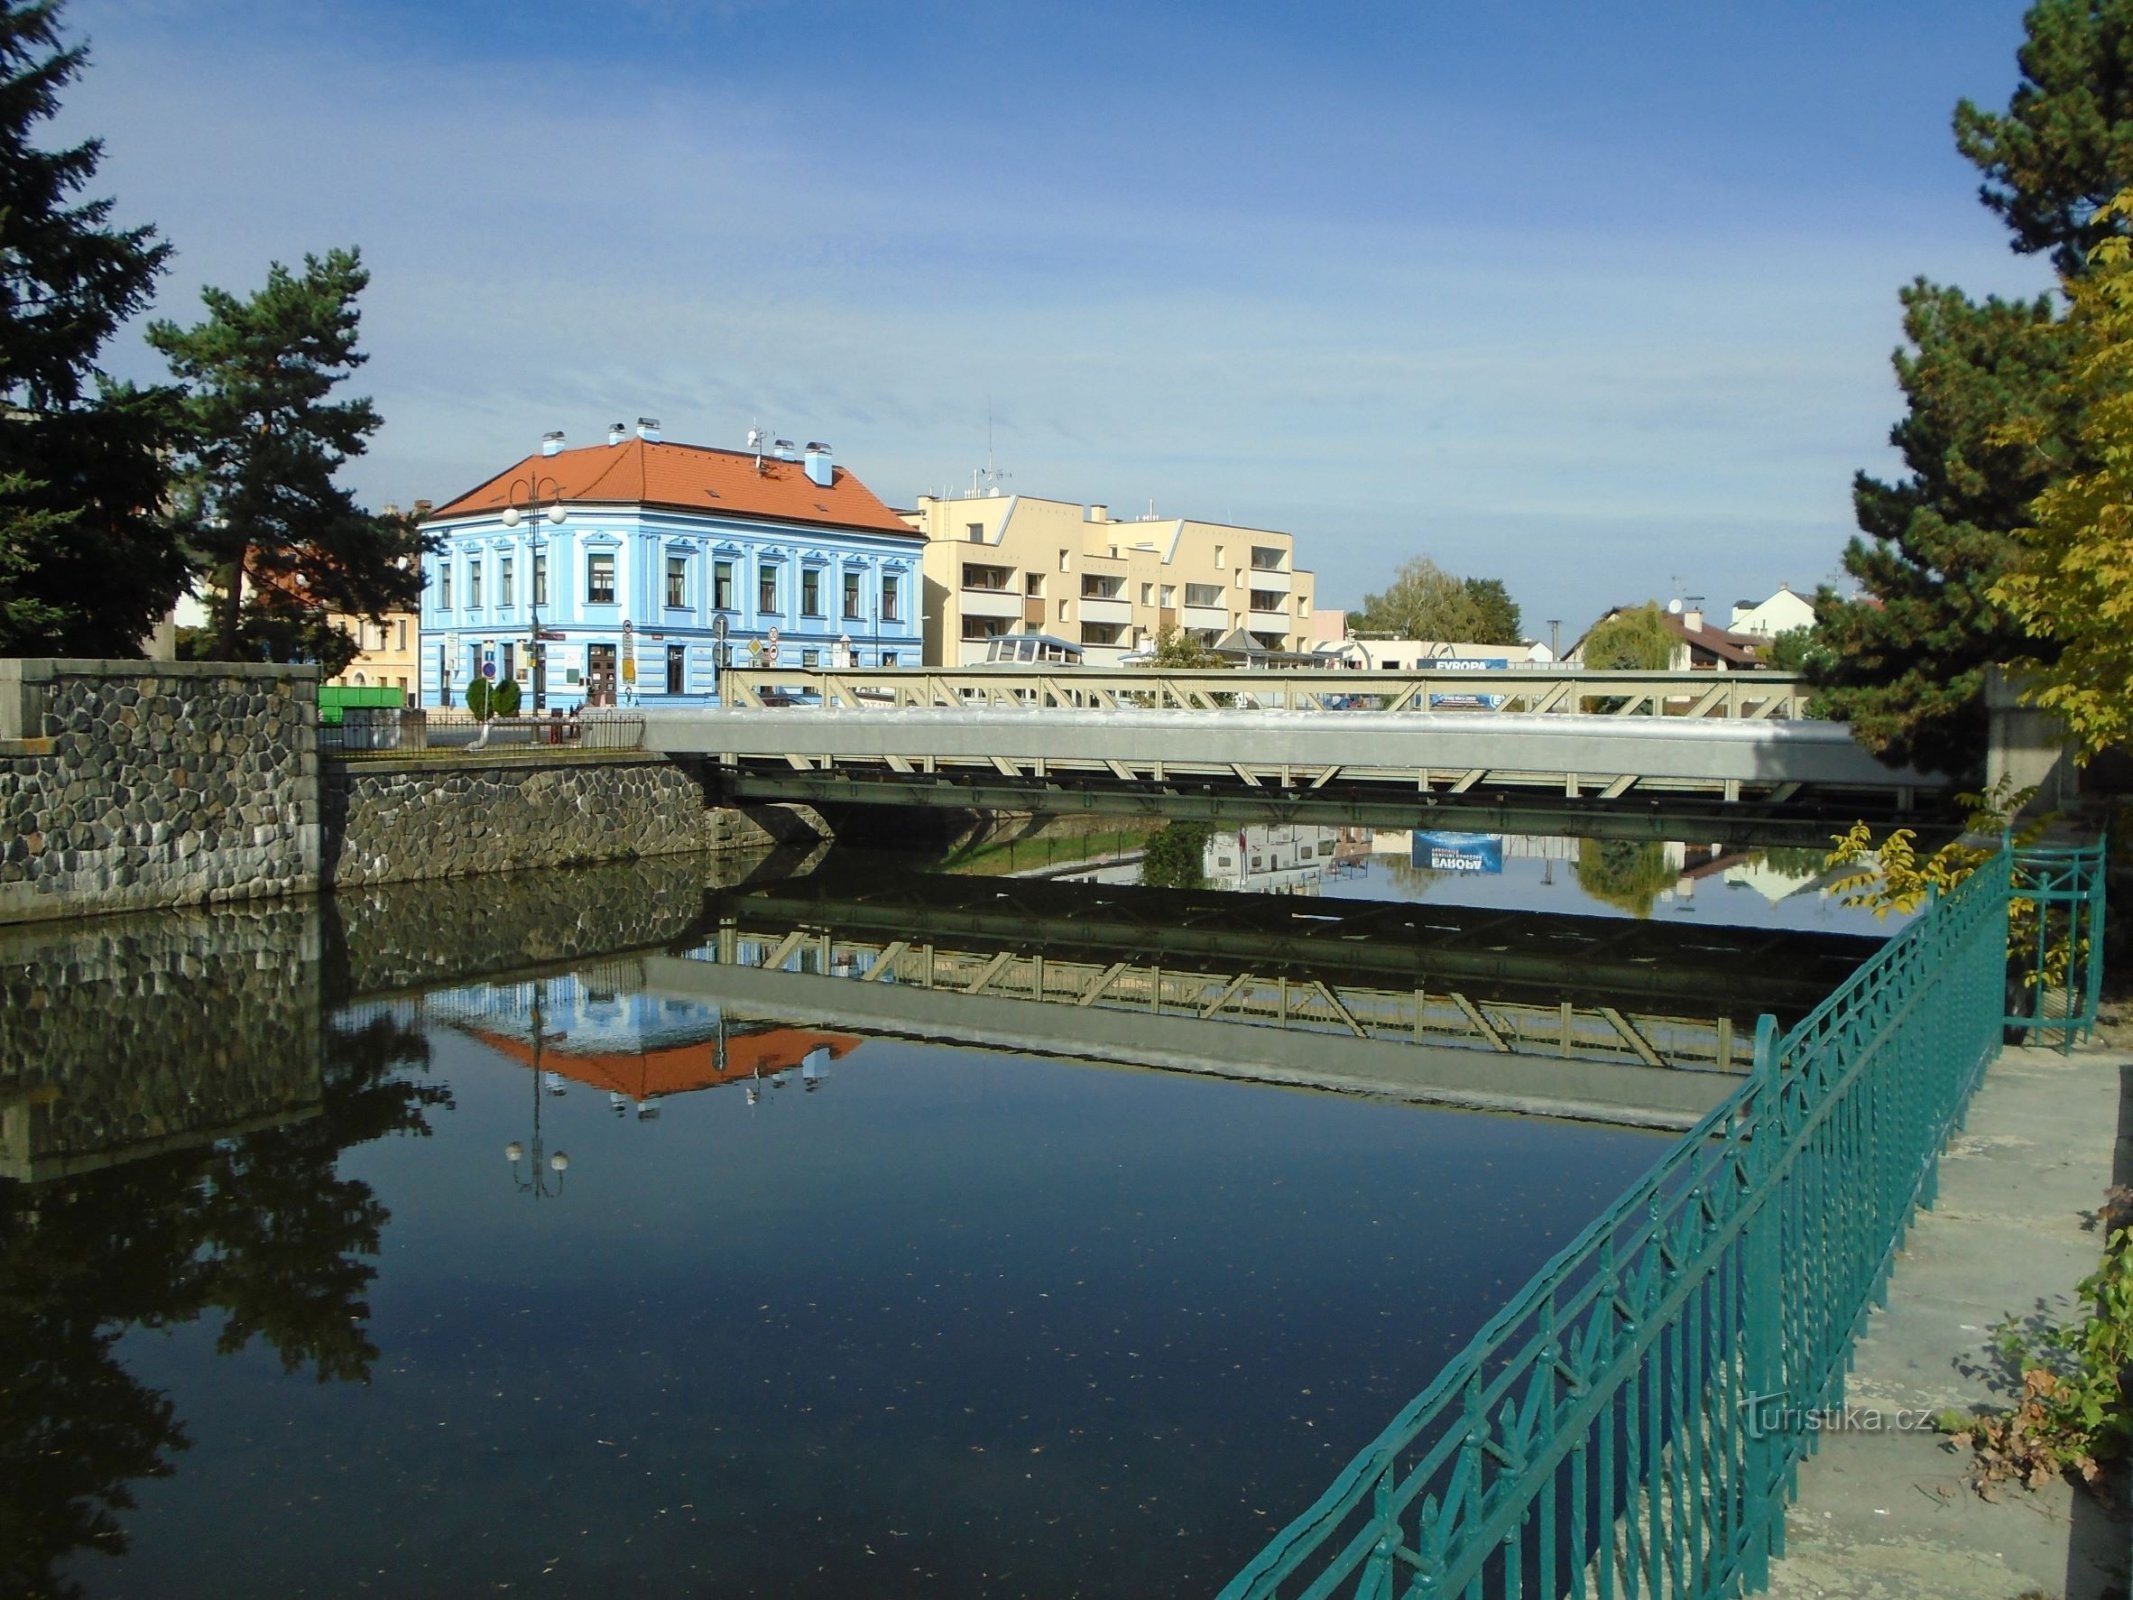 Brücke über die Chrudimka, die zum Areal der automatischen Mühlen führt (Pardubice, 26.9.2018)